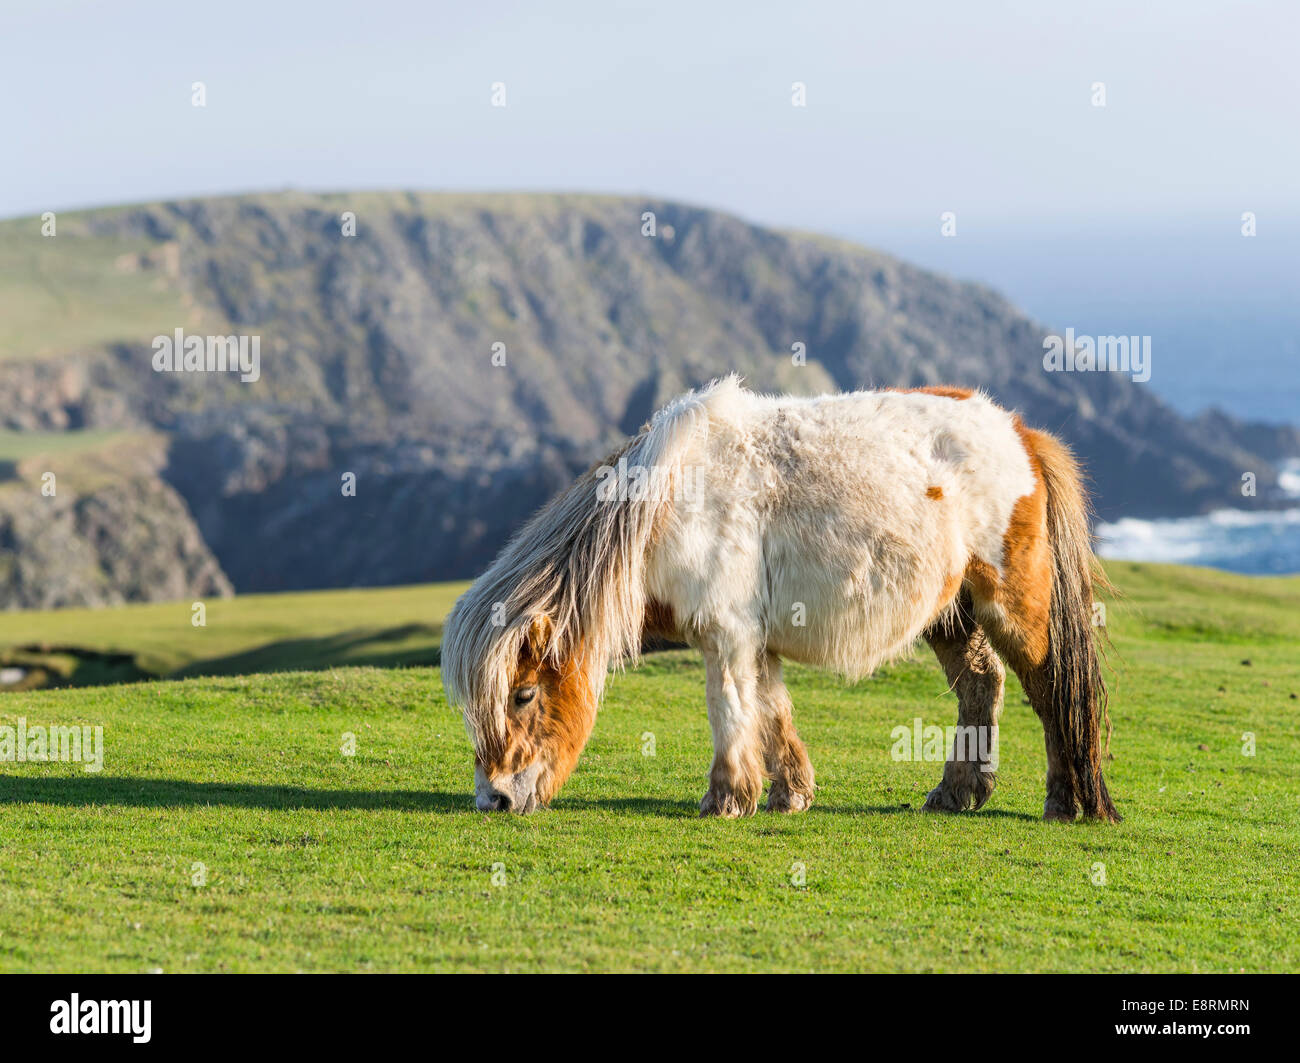 Poney Shetland dans les pâturages près de hautes falaises, îles Shetland, en Écosse. Tailles disponibles (grand format) Banque D'Images